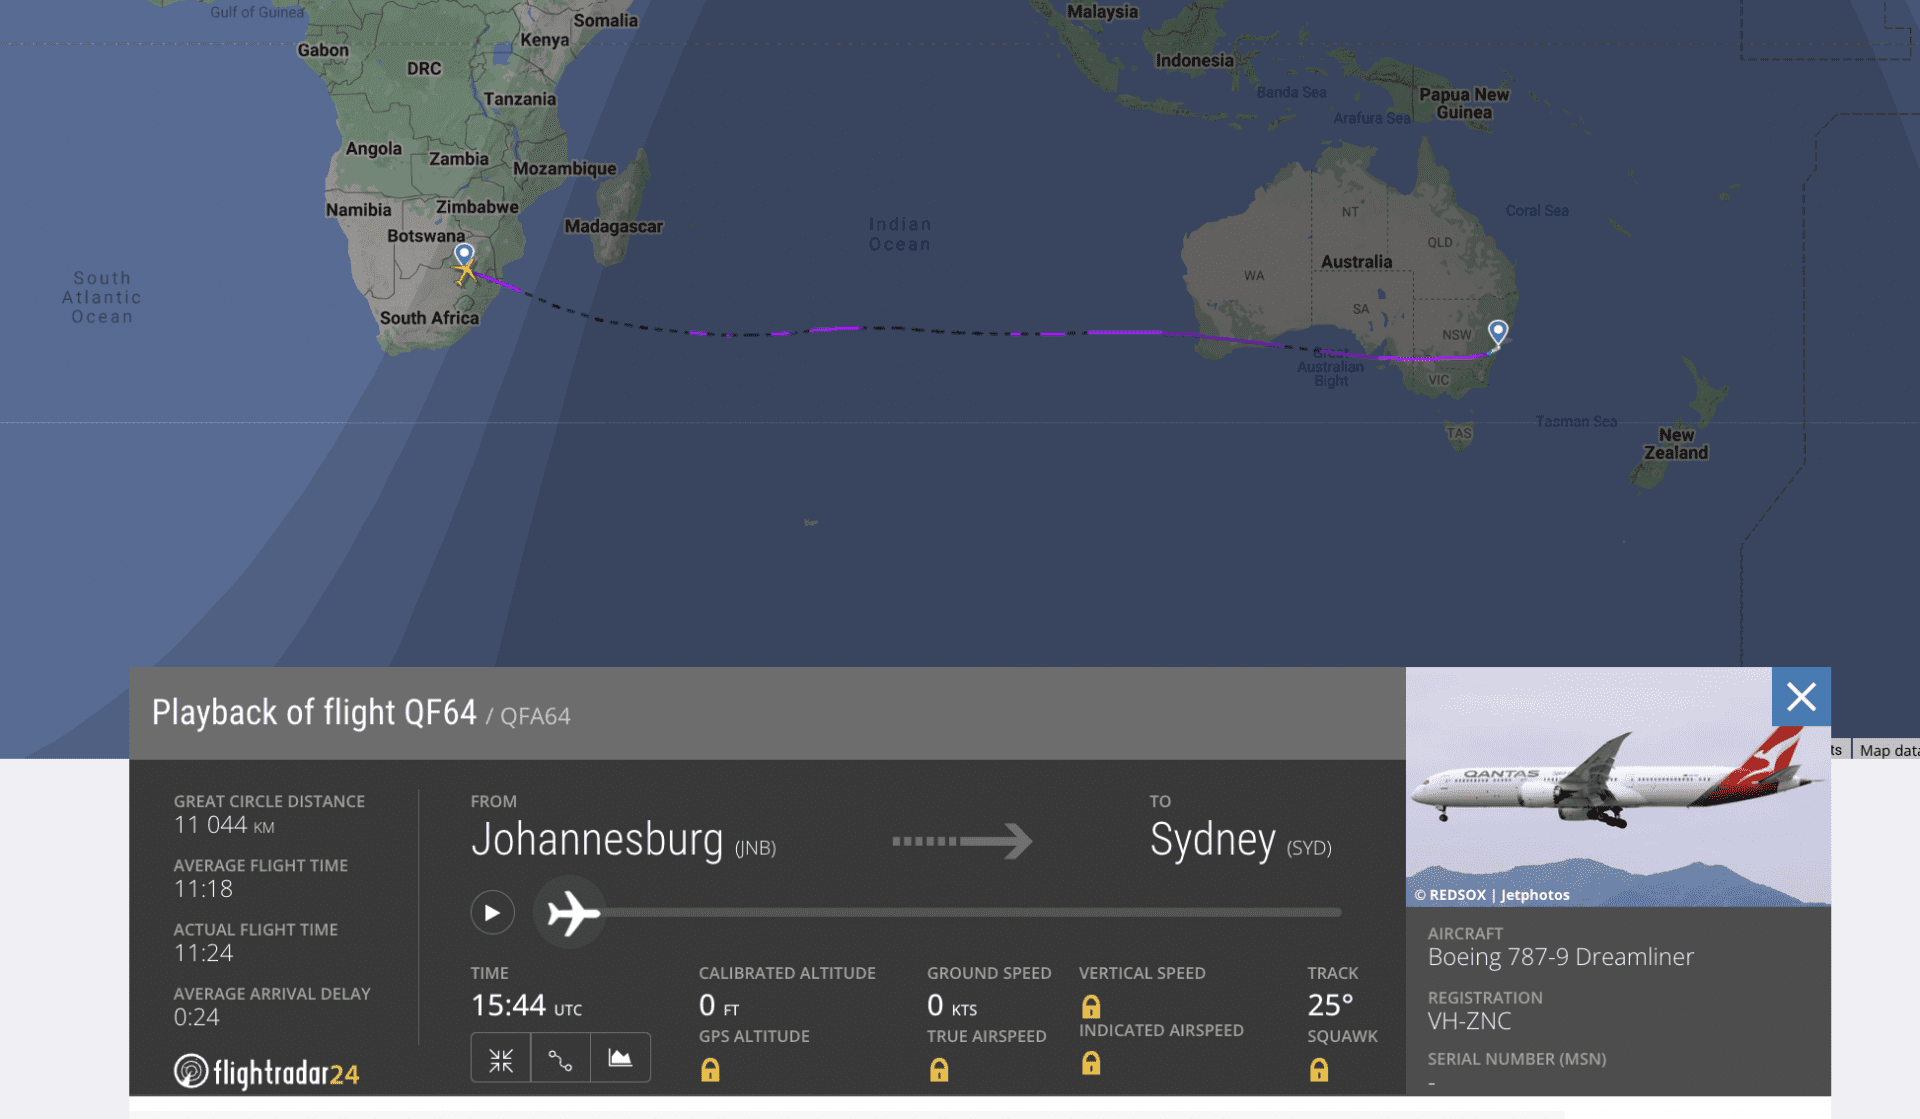 Zrzut ekrany z serwisu Flightradar24.com ilustruje trasę samolotu QF64 z Johannesburga do Sydney 